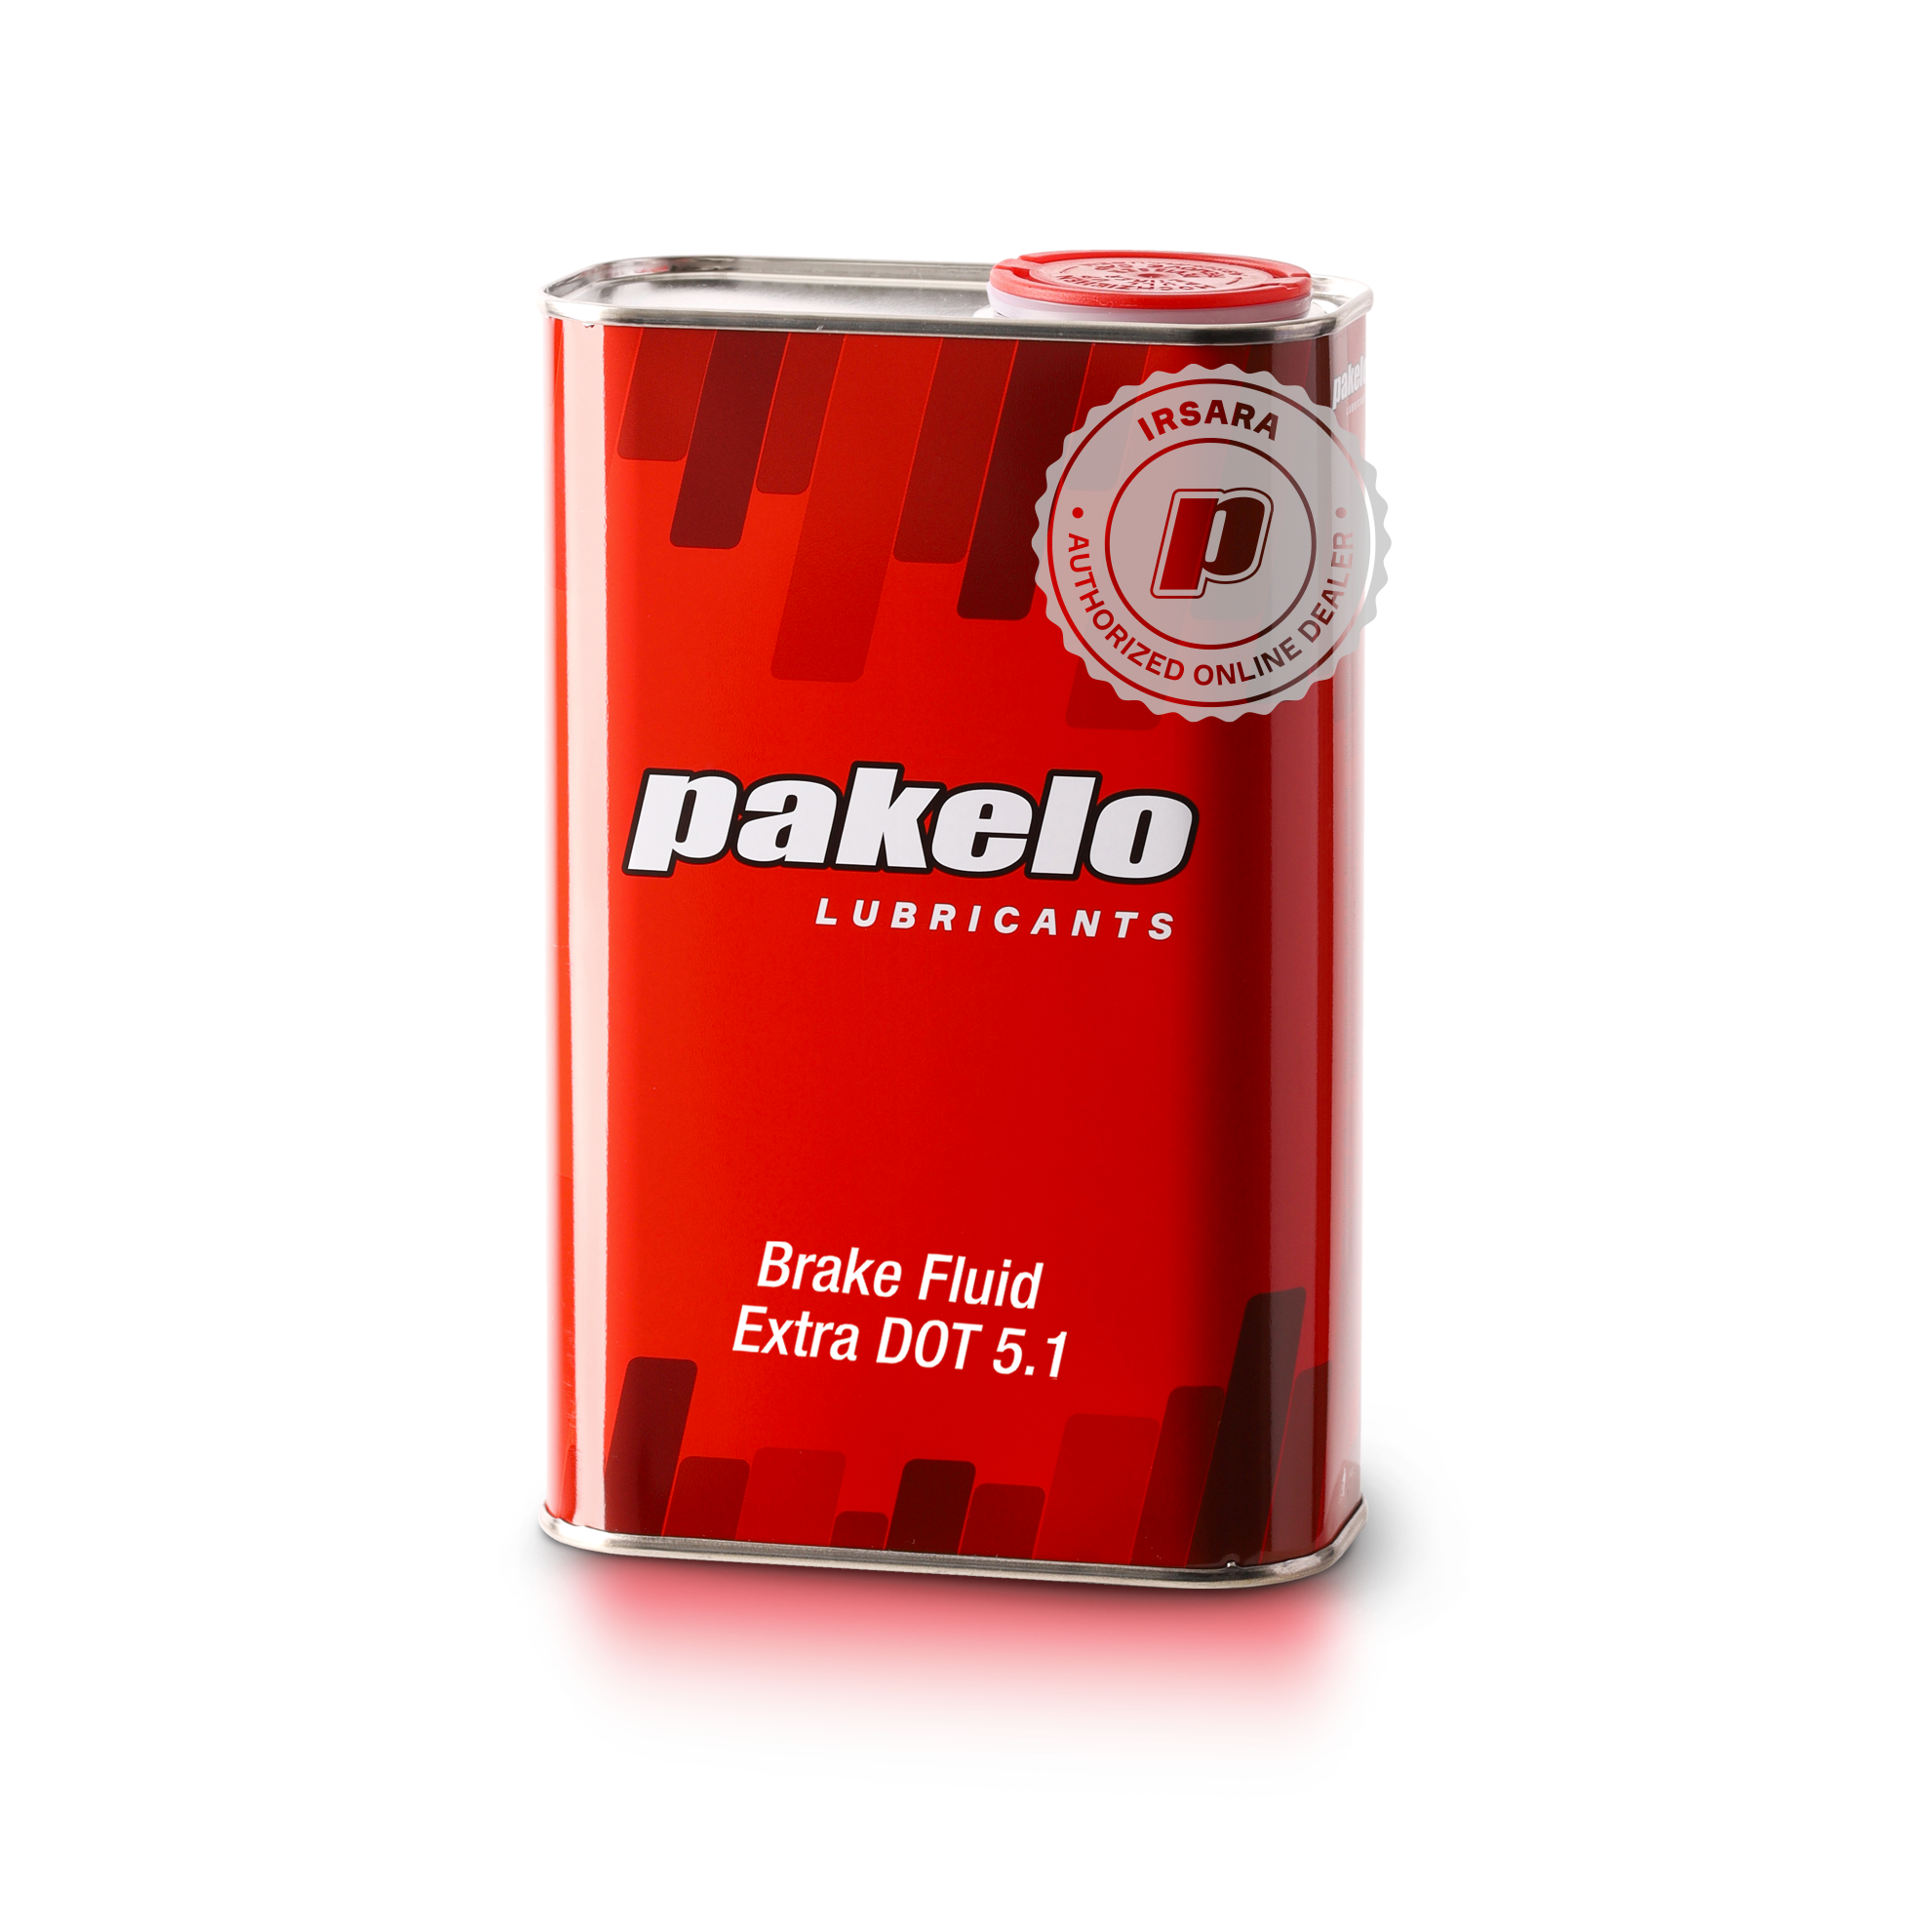 Pakelo Brake Fluid Extra DOT 5.1 (1 Lt.)